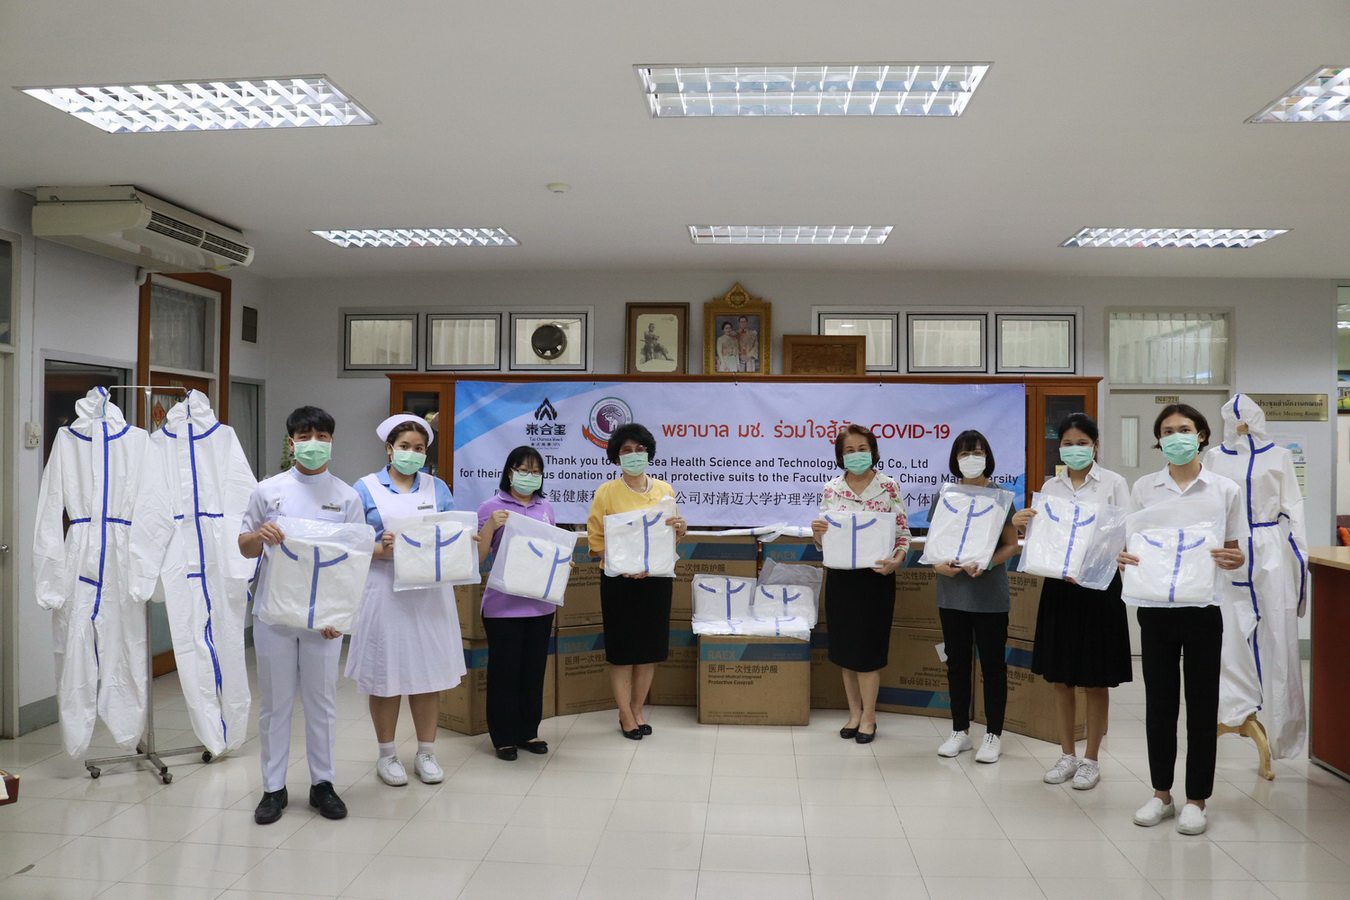 
	รับมอบอุปกรณ์ป้องกันอันตรายส่วนบุคคล (PPE) จาก Taioursea Health Science and Technology Nanjing Co., Ltd.
